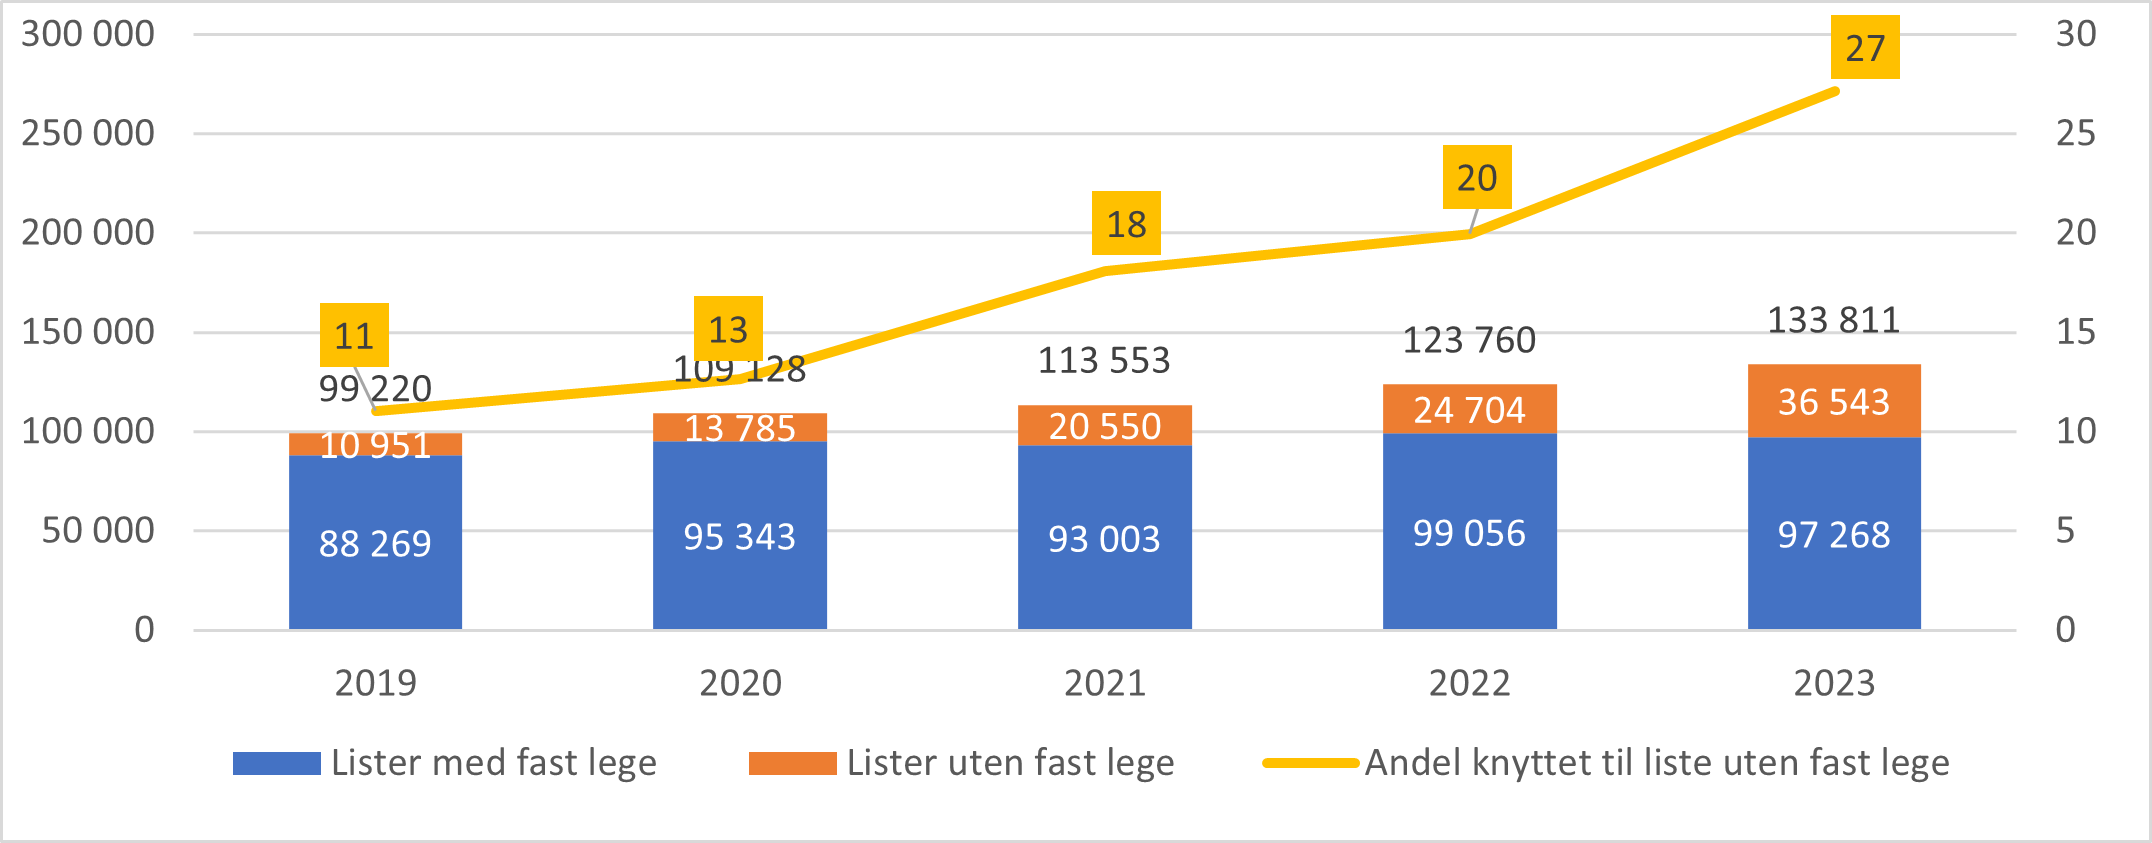 Beregnede vikardager første halvår 2019-2023. Absolutte tall og andel.